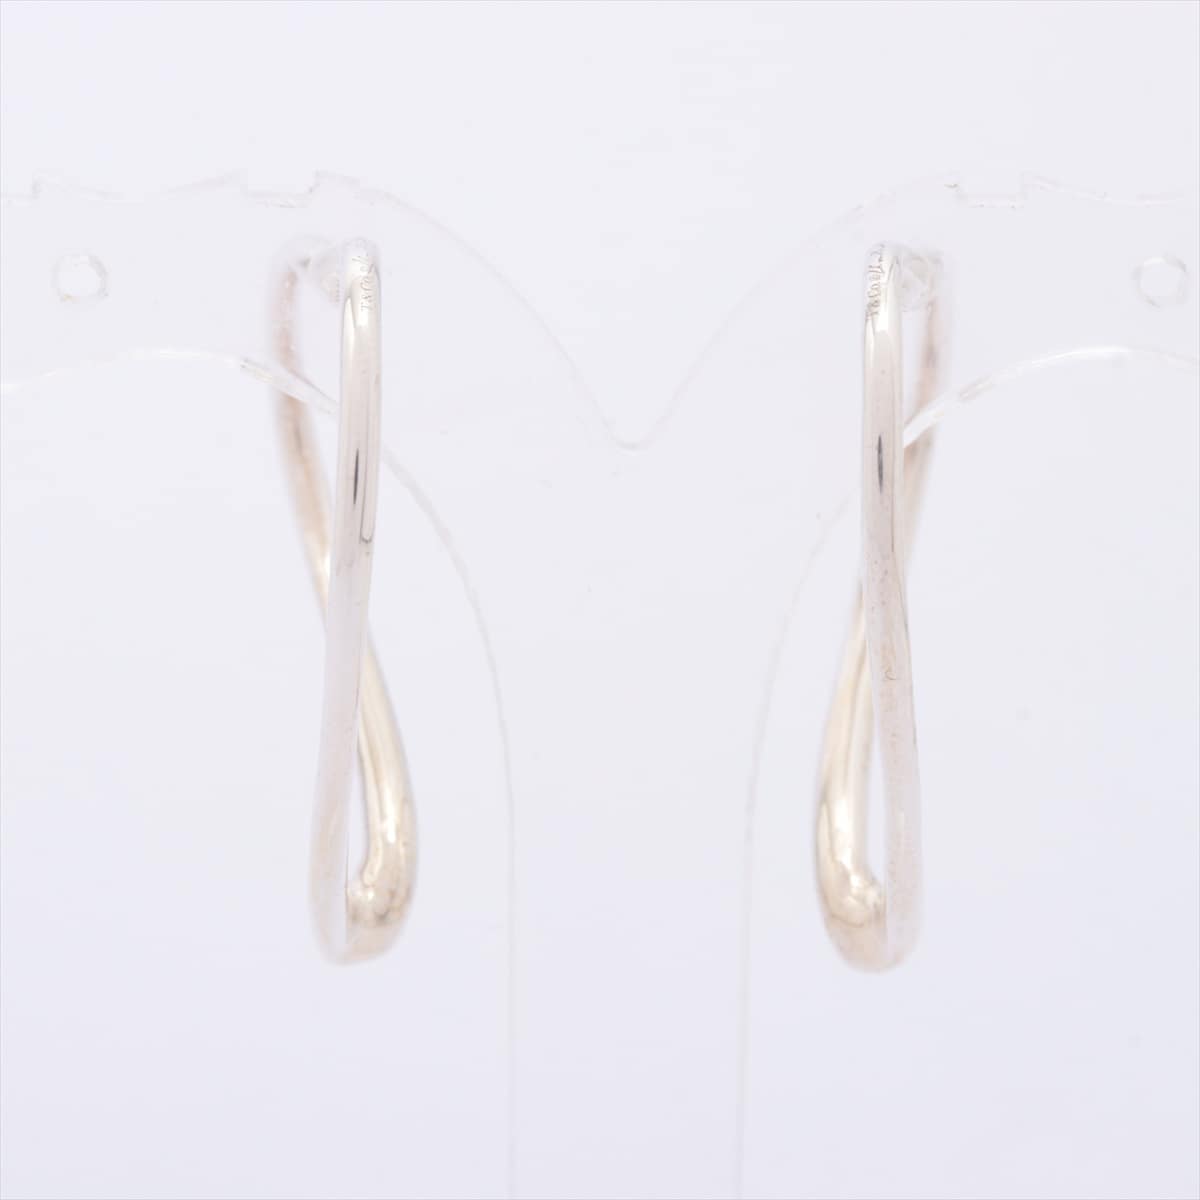 Tiffany Open Heart Hoop Piercing jewelry (for both ears) 925 5.5g Silver